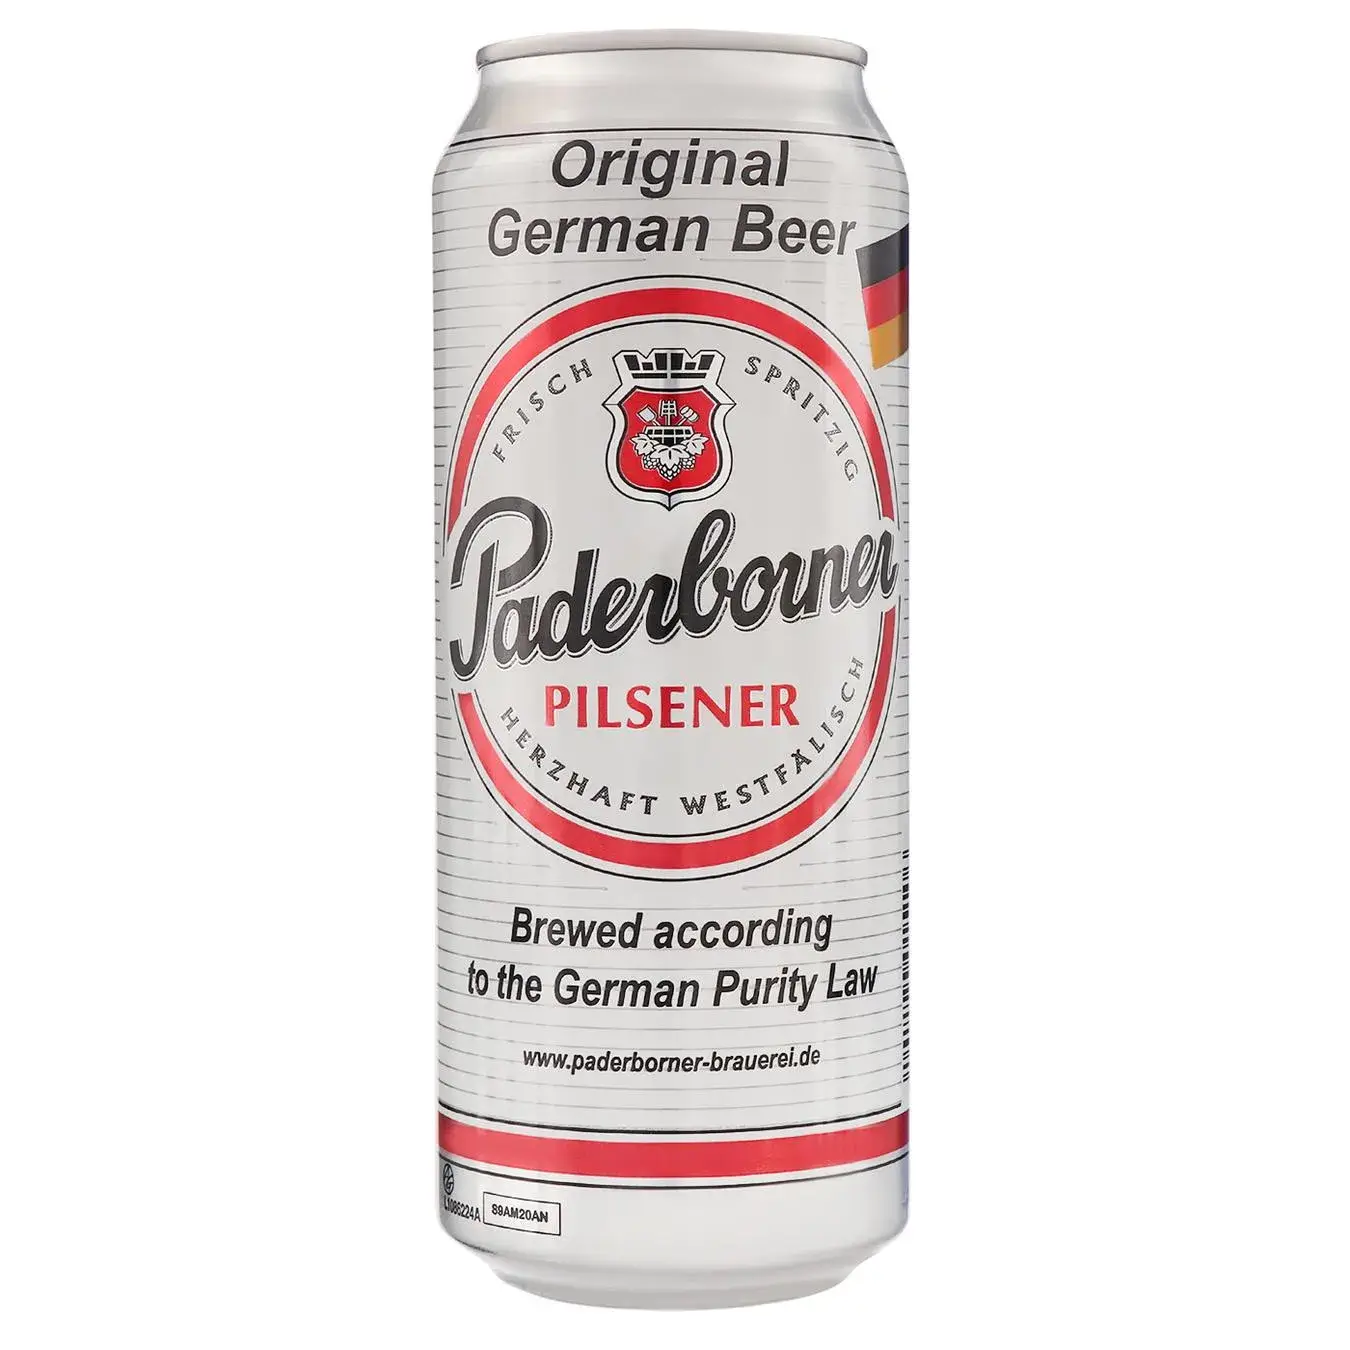 Paderborner – Pilsener – 500 ml can / Pils | German Deli Ph